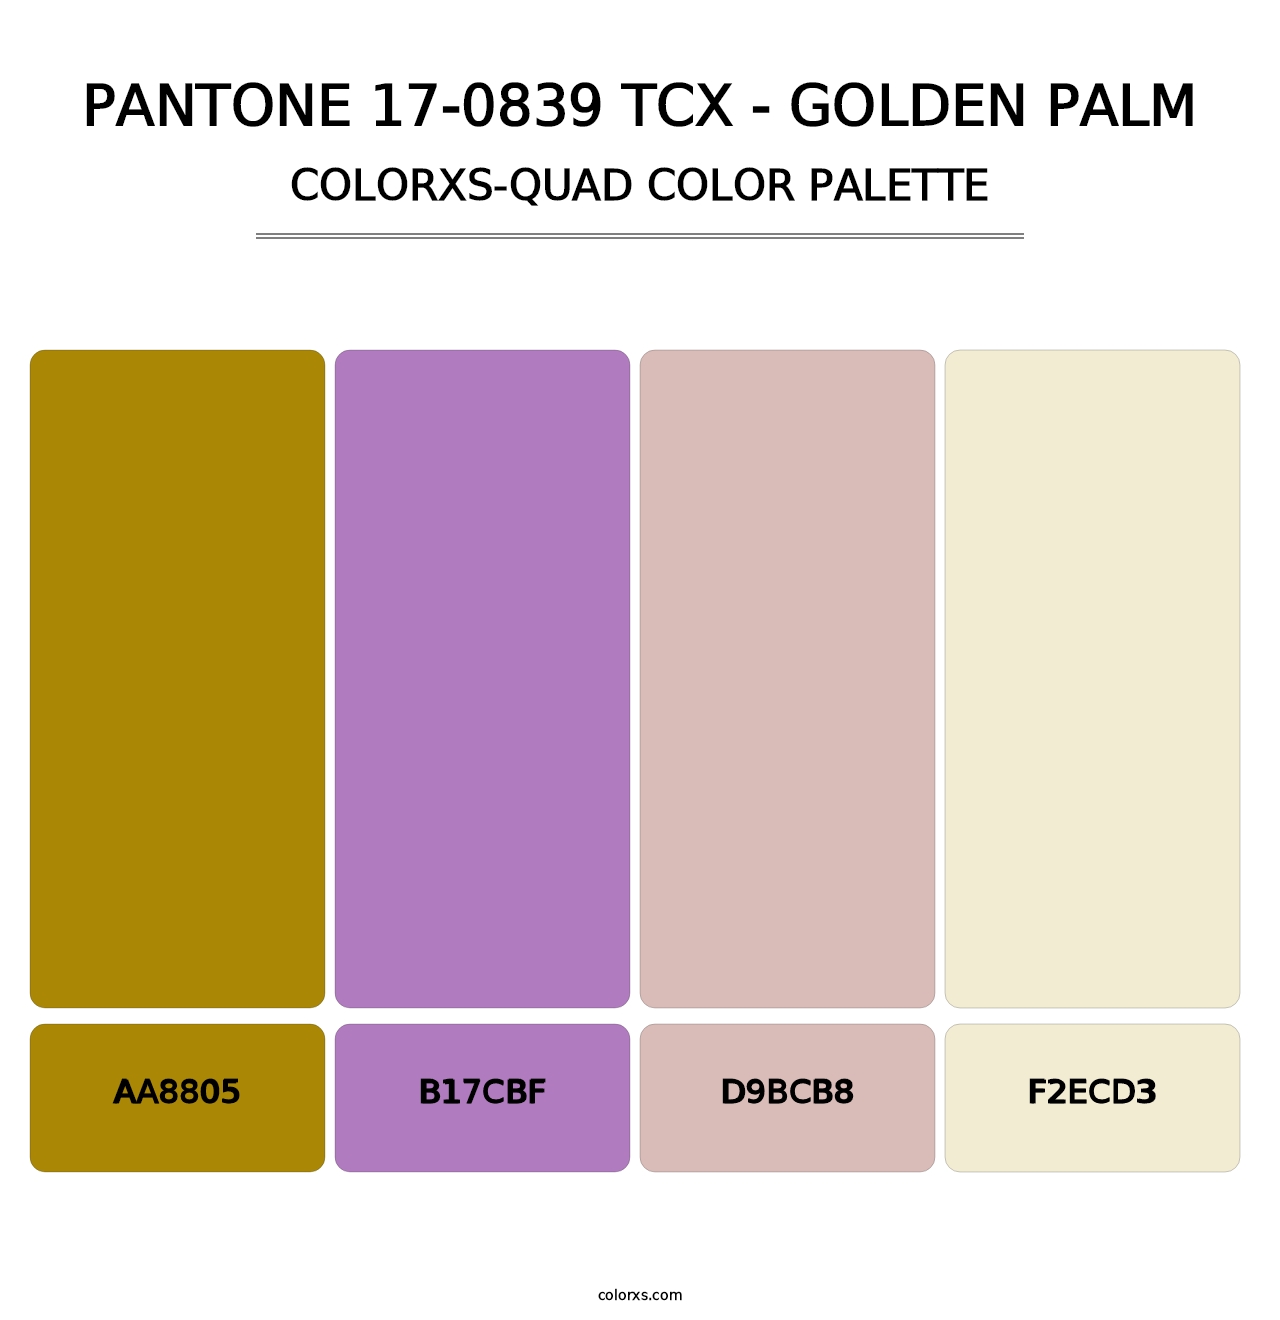 PANTONE 17-0839 TCX - Golden Palm - Colorxs Quad Palette